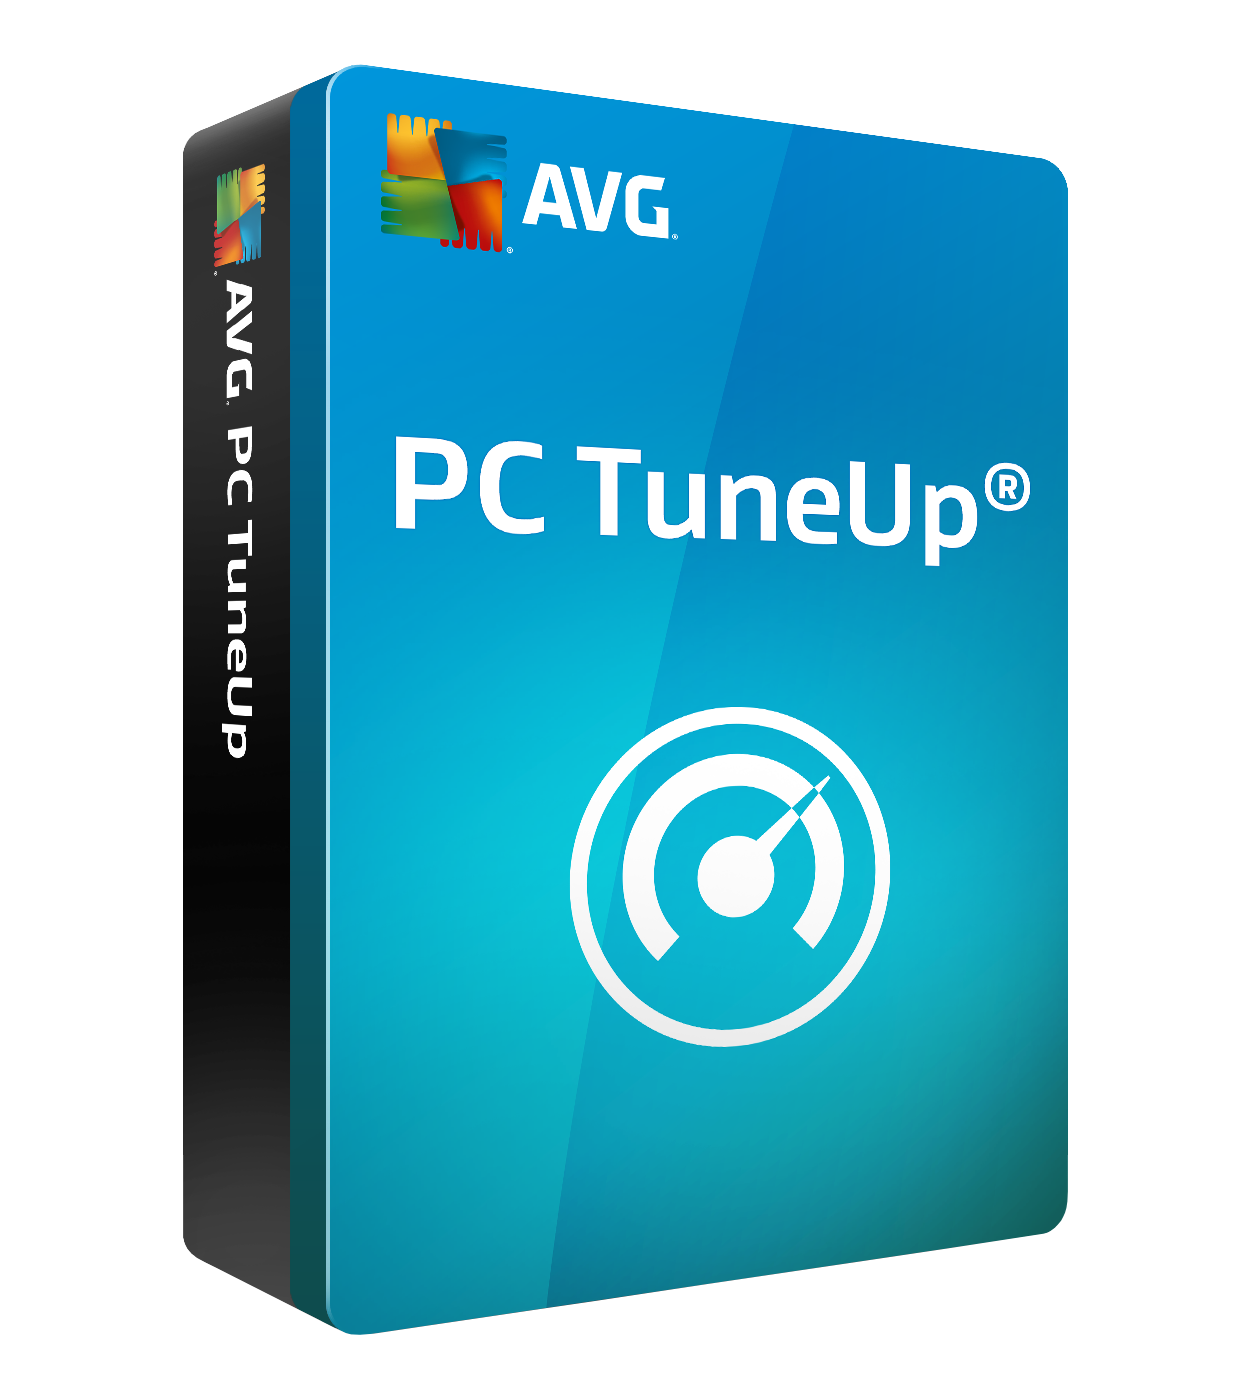 AVG PC TuneUp 3 PCs 1 Year